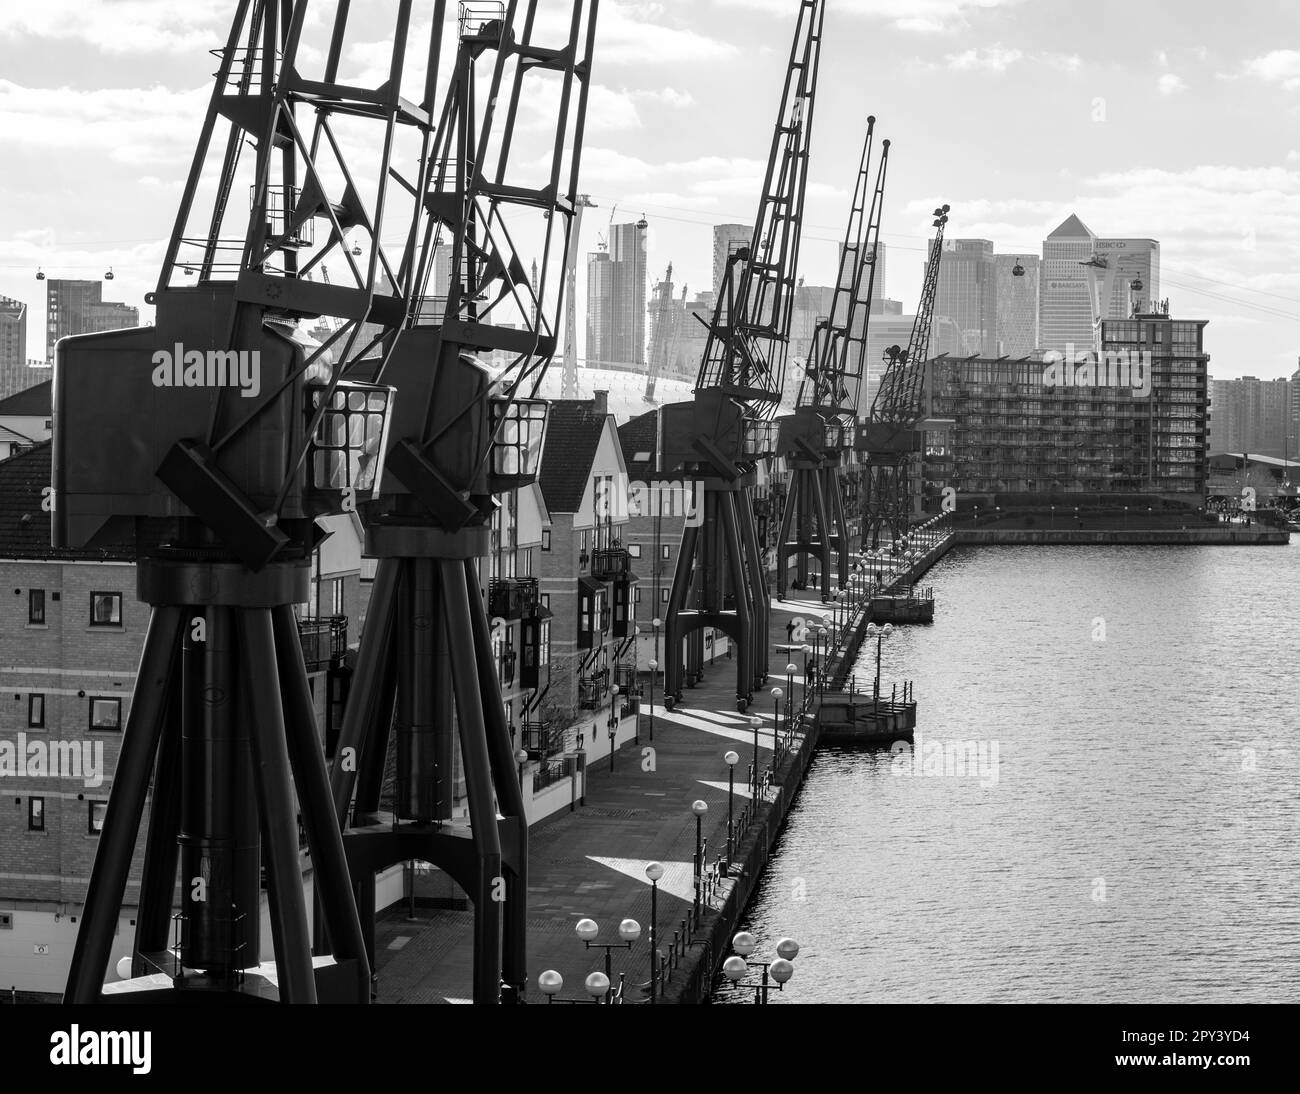 Dockers Cranes se présente comme décoration, une ode au passé industriel, Royal Victoria Dock, Silvertown, Newham, East London. Patrimoine industriel Angleterre. Banque D'Images